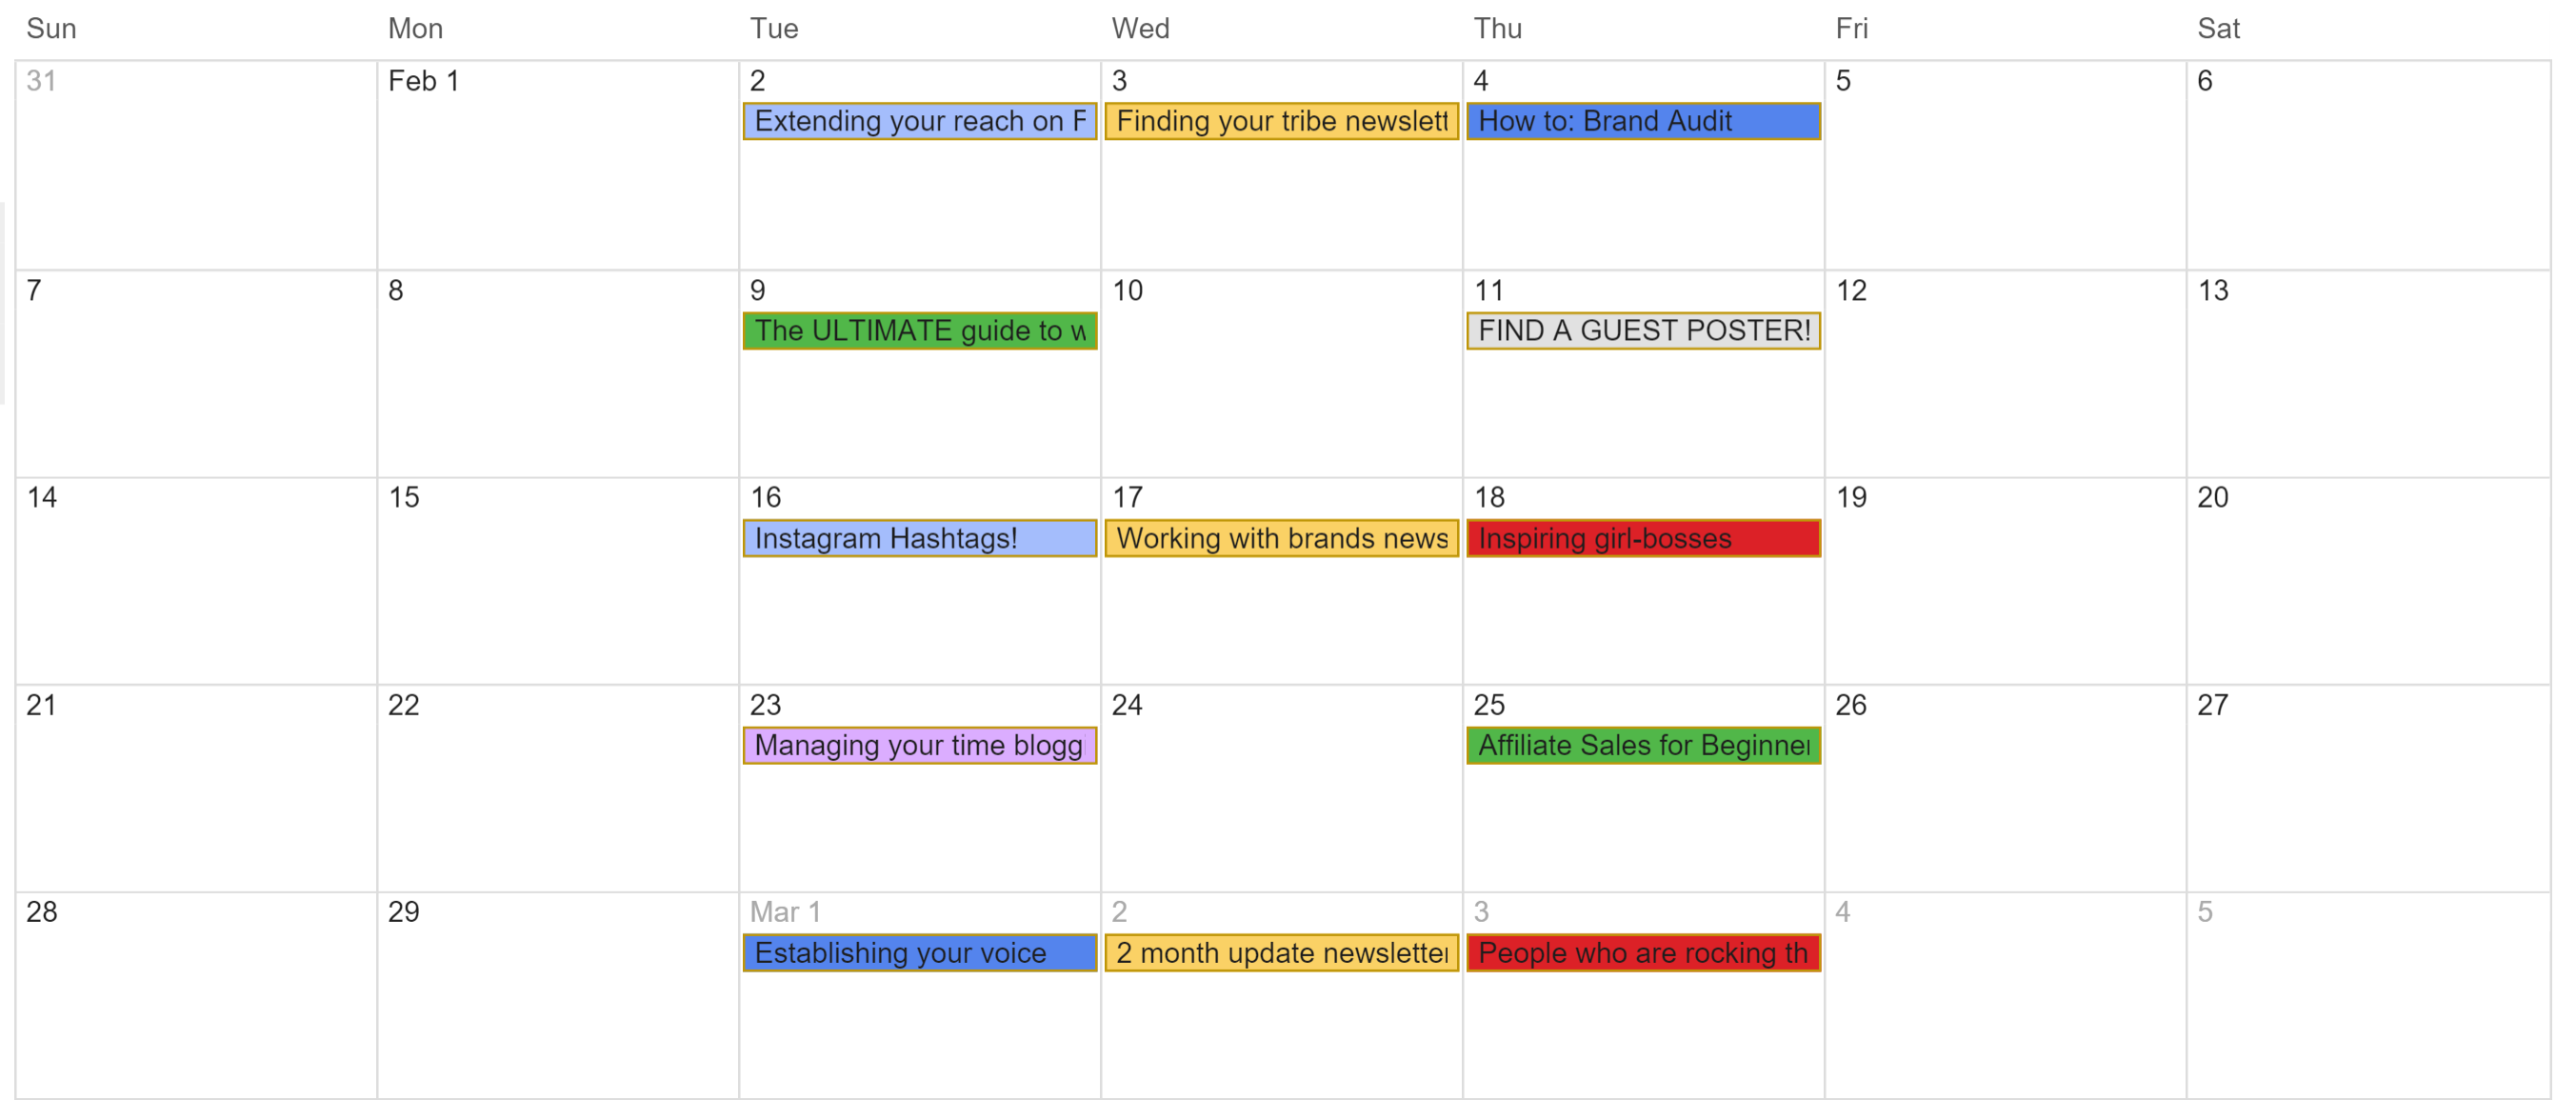 evernote calendar templates 2019